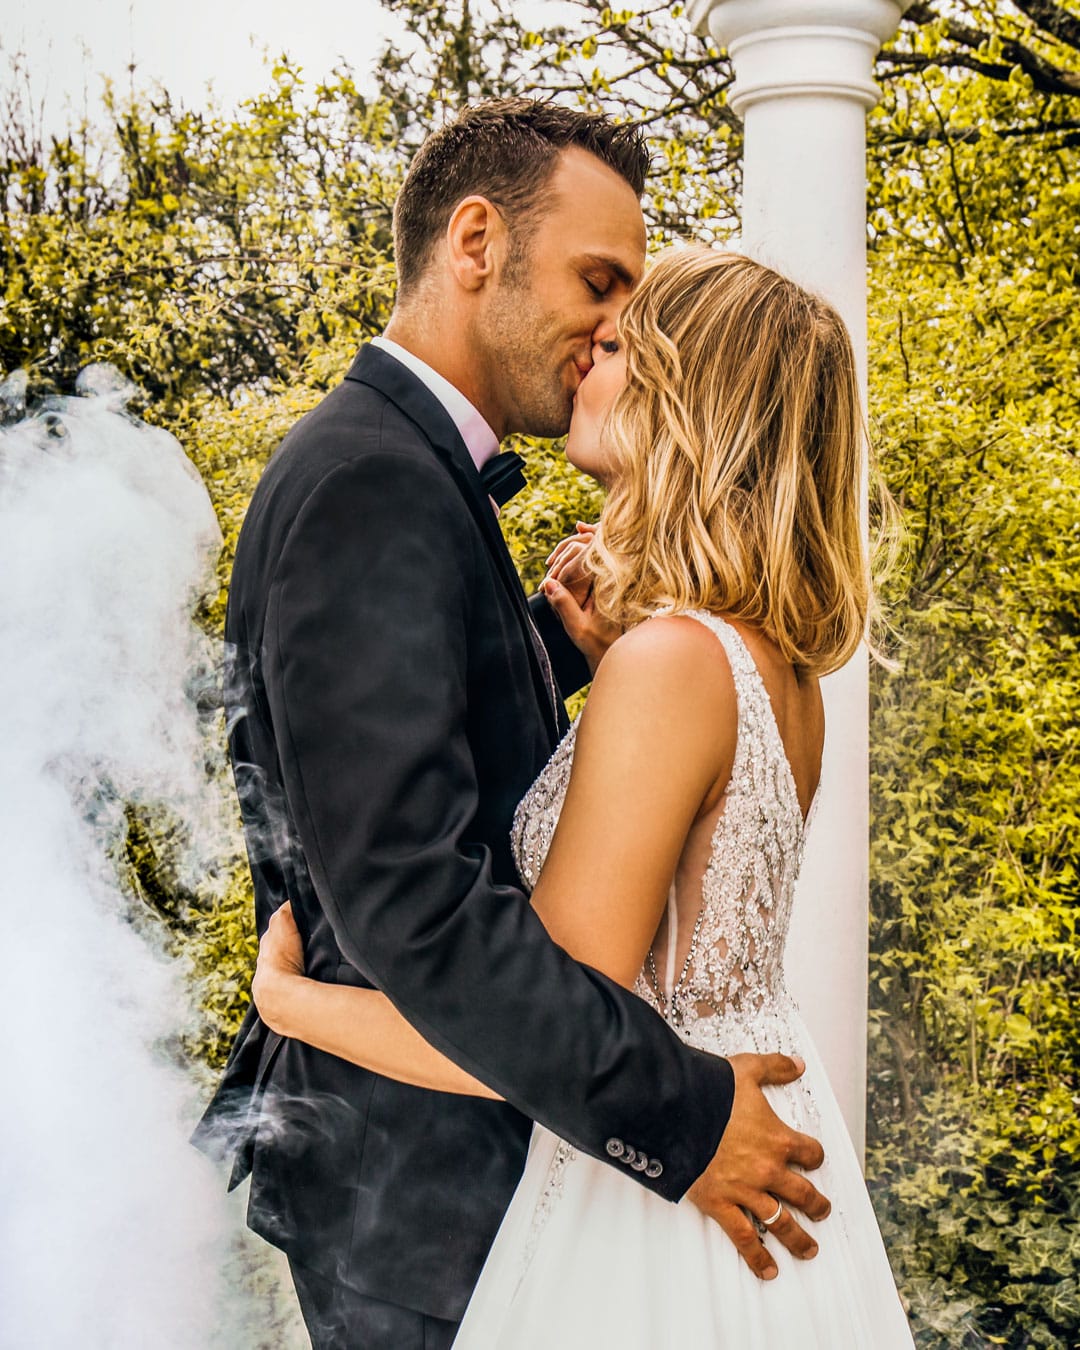 Strahlendes Brautpaar teilt einen liebevollen Kuss umgeben von nebeligem Ambiente bei einer Glüx-Hochzeitsfeier.